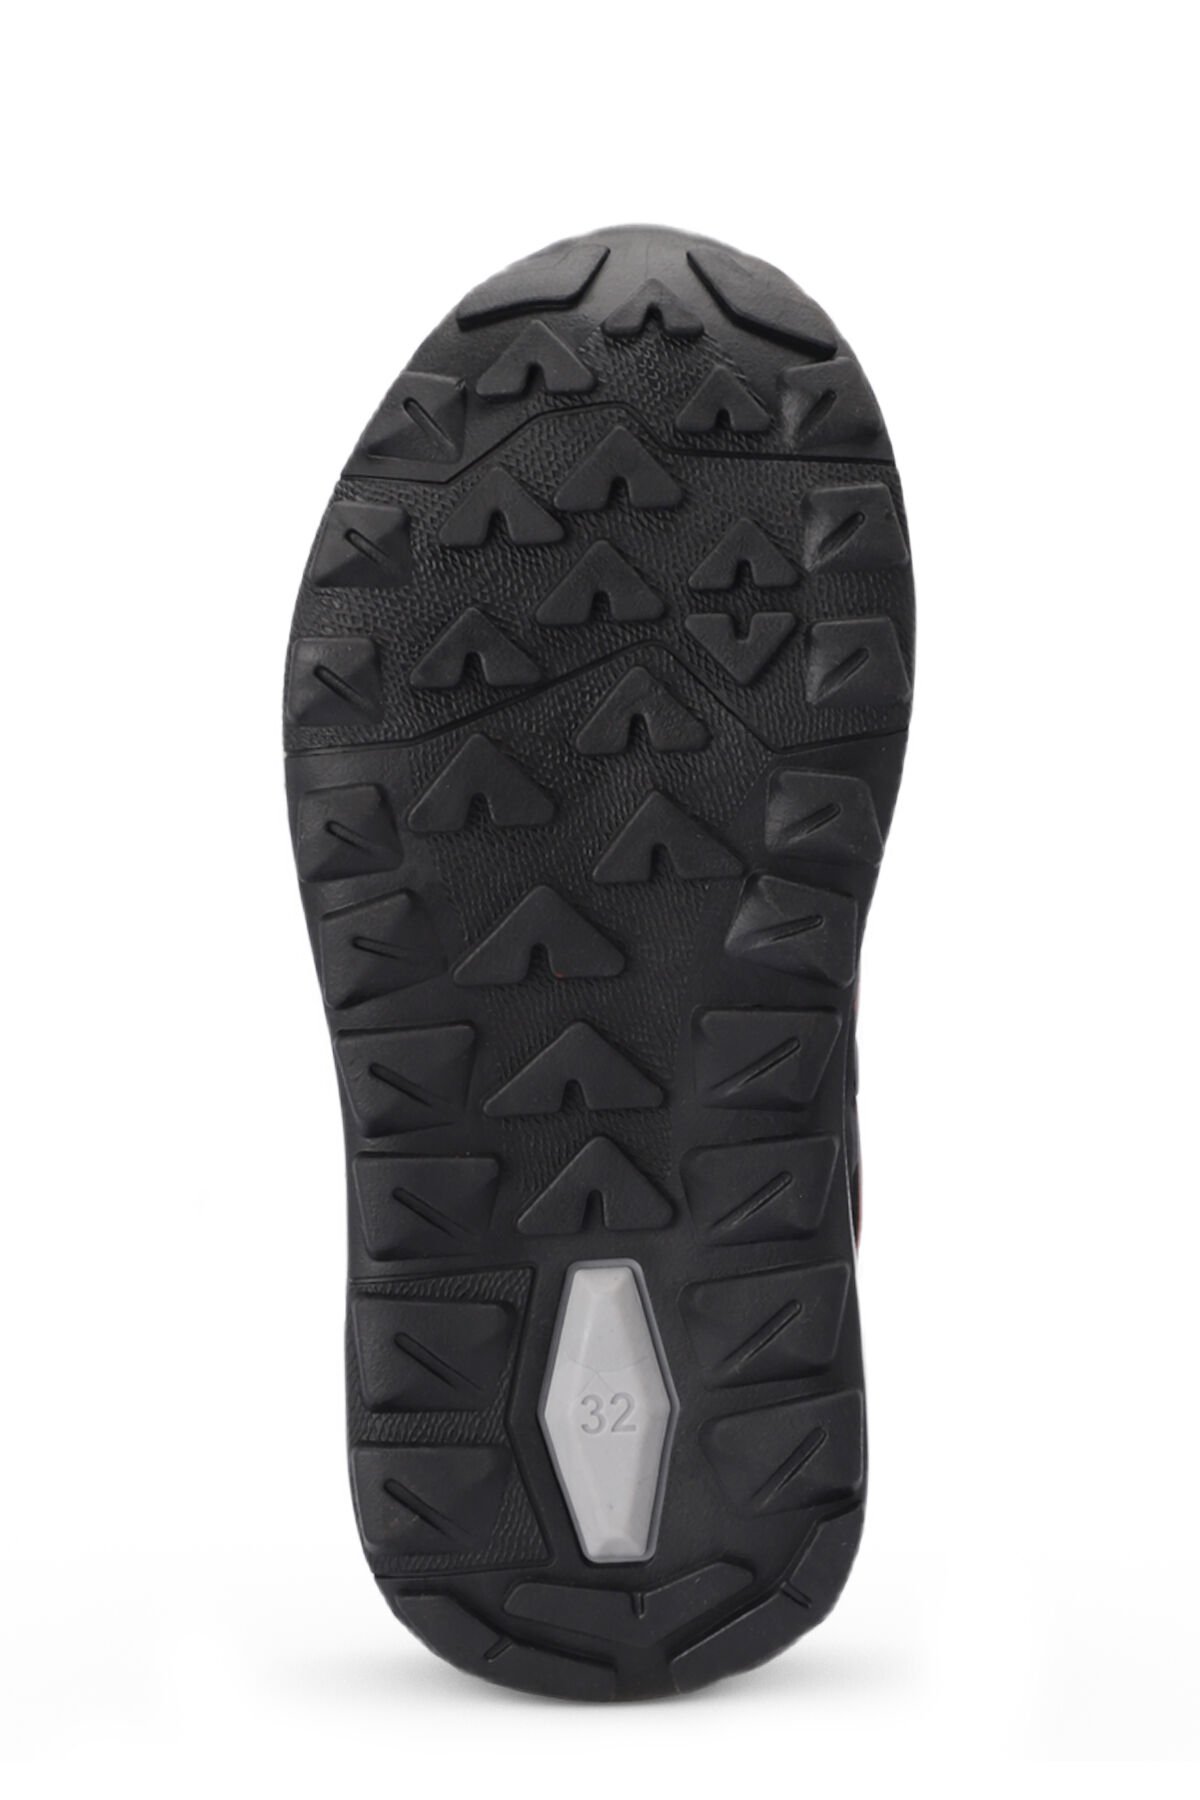 Slazenger KROSS KTN Sneaker Unisex Çocuk Ayakkabı Siyah / Koyu Gri - Thumbnail